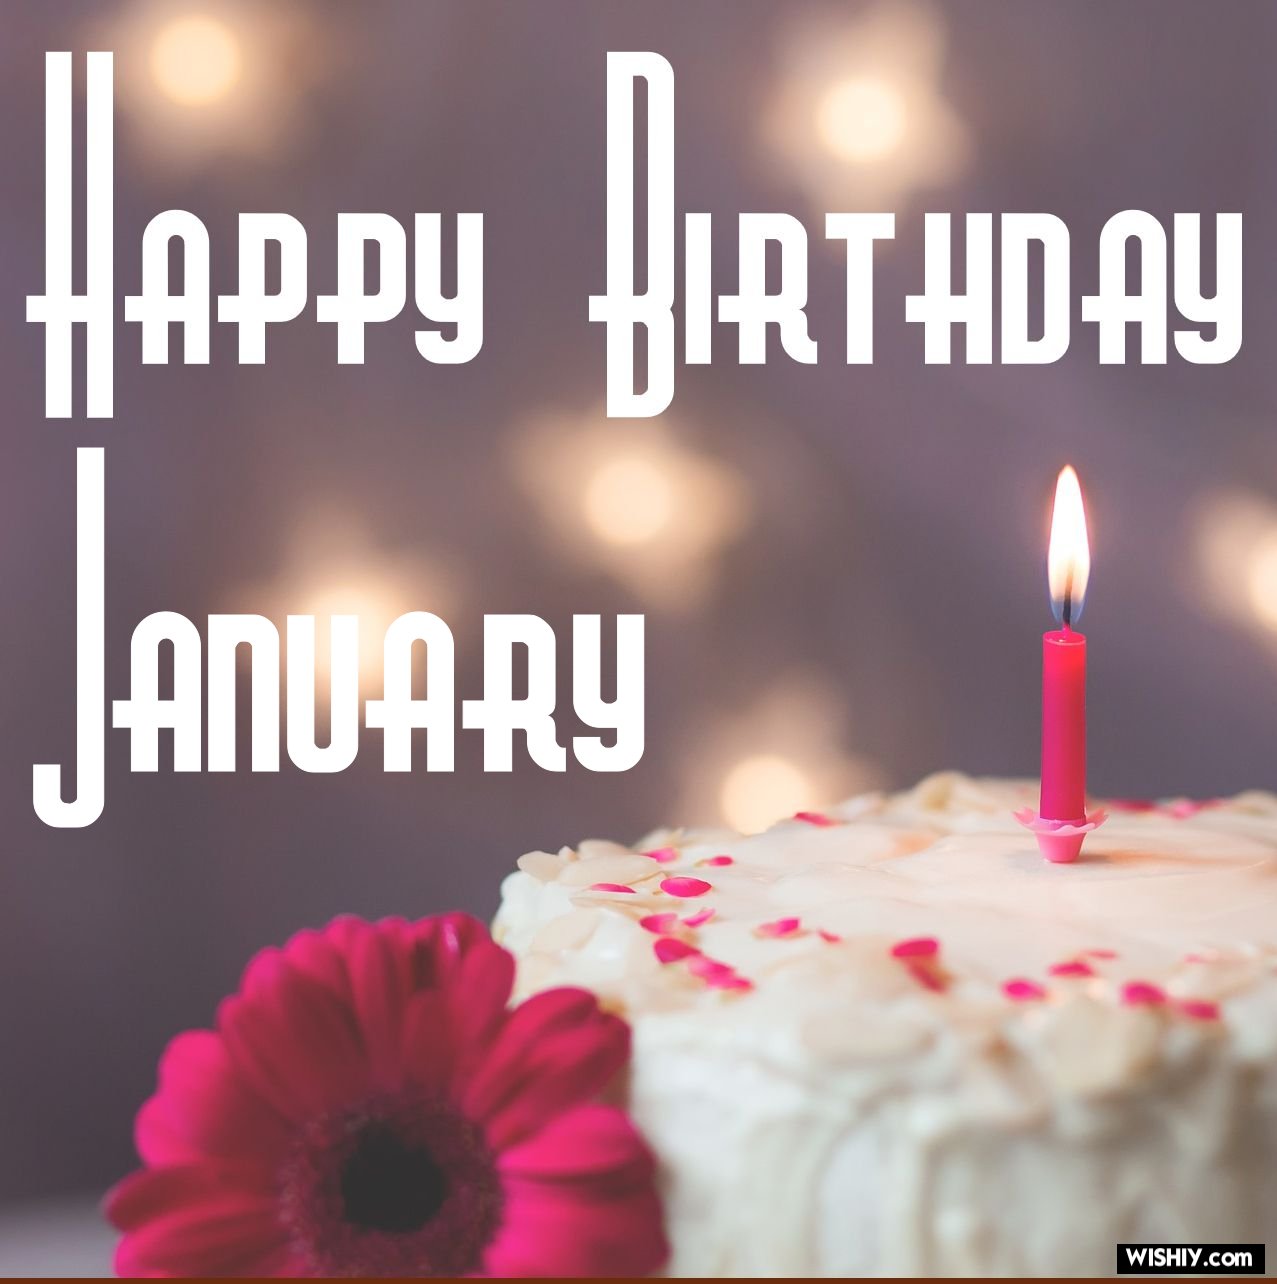 La imagen muestra una tarta con una vela y la palabra enero en inglés.